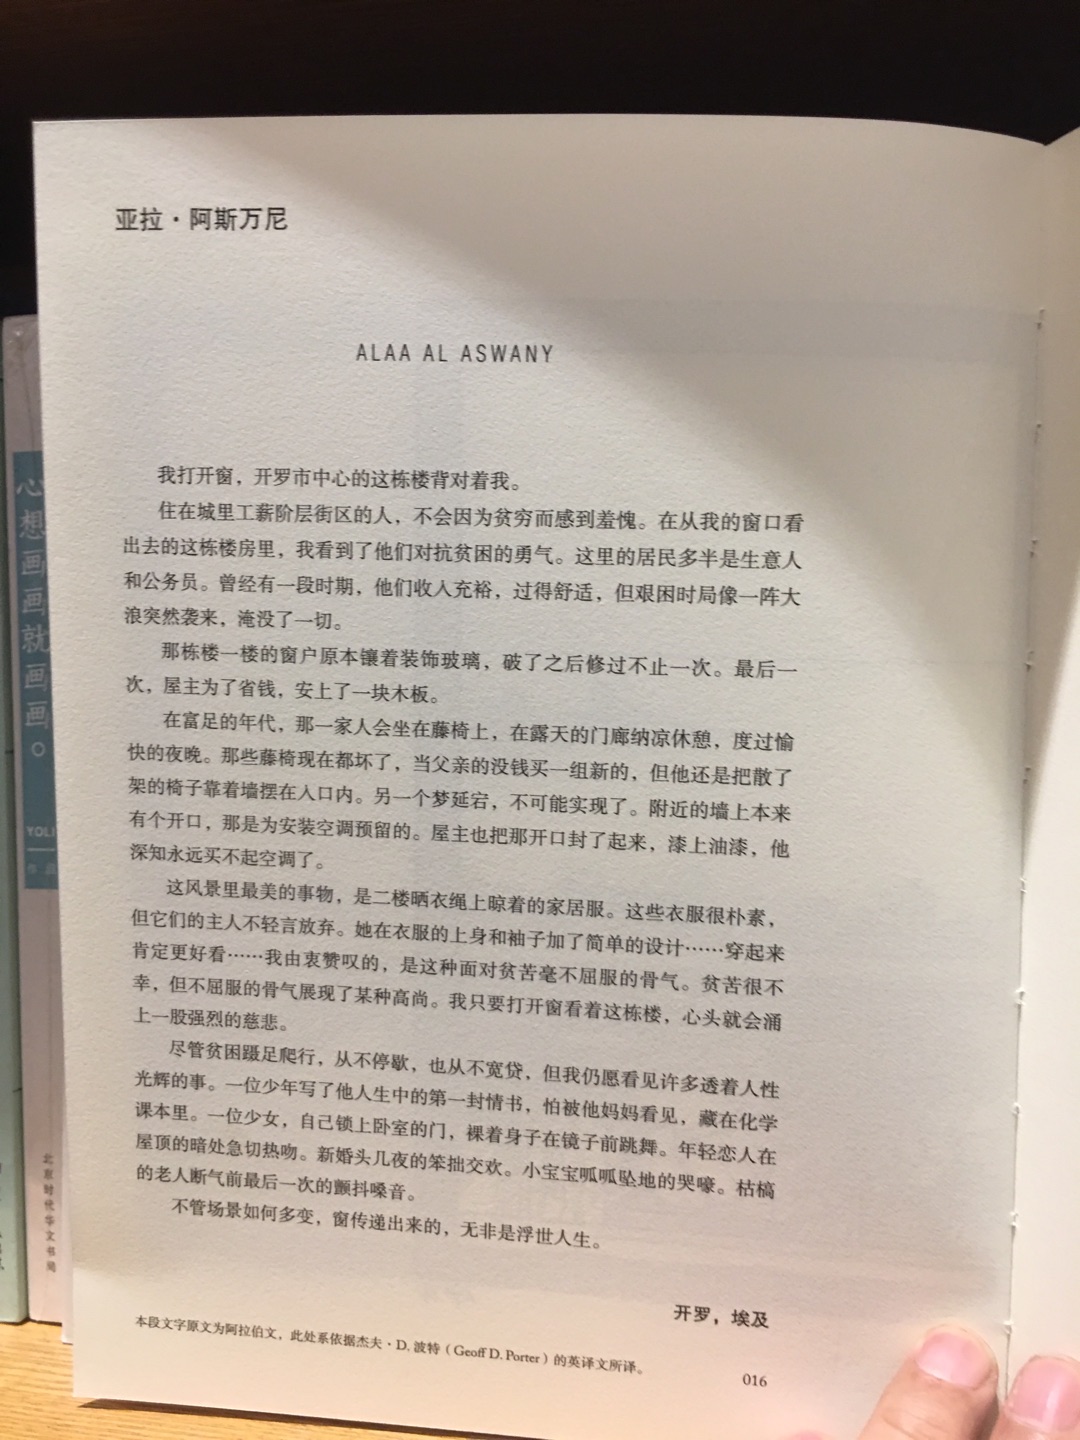 【内容简介】《企鹅经典：小黑书》是企鹅出版集团在成立80周年之际开始推出的系列“文学册子”，选目磅礴丰富，跨越时间与空间的束缚，寻找传世之作。此次出版的中英双语版本，从英文原版的选目中，为中国读者精心挑选了30部兼具经典性与当代性的作品，分三辑推出。除可读性较高的短篇小说之外，还收录了一些诗歌及未曾译介过的非虚构作品。